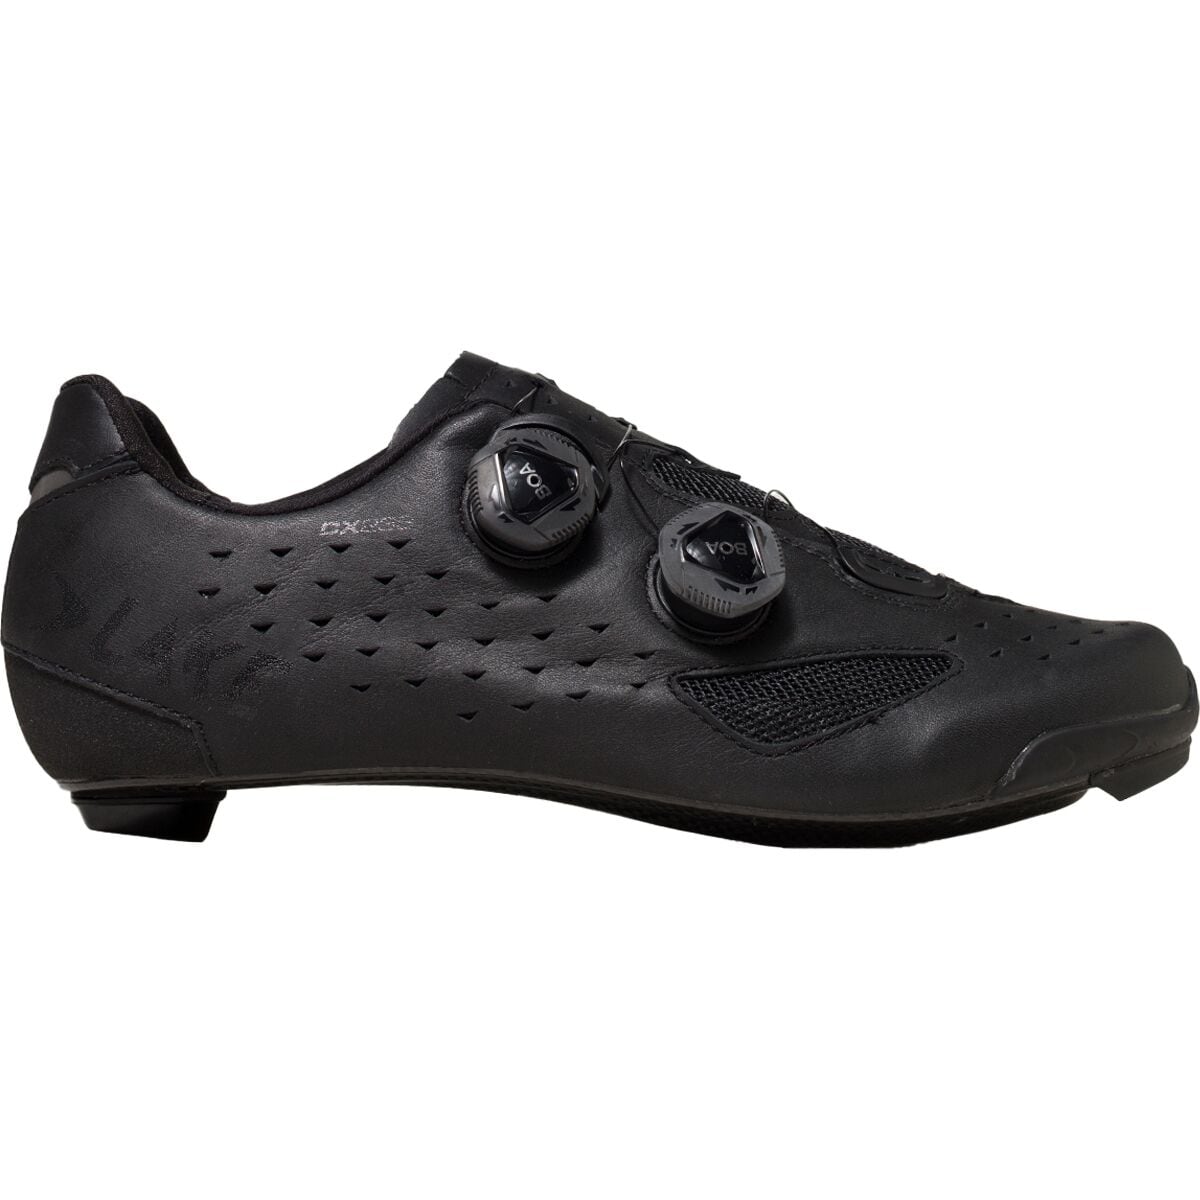 Lake CX238 Wide Cycling Shoe - Men's Black/Black, 41.5